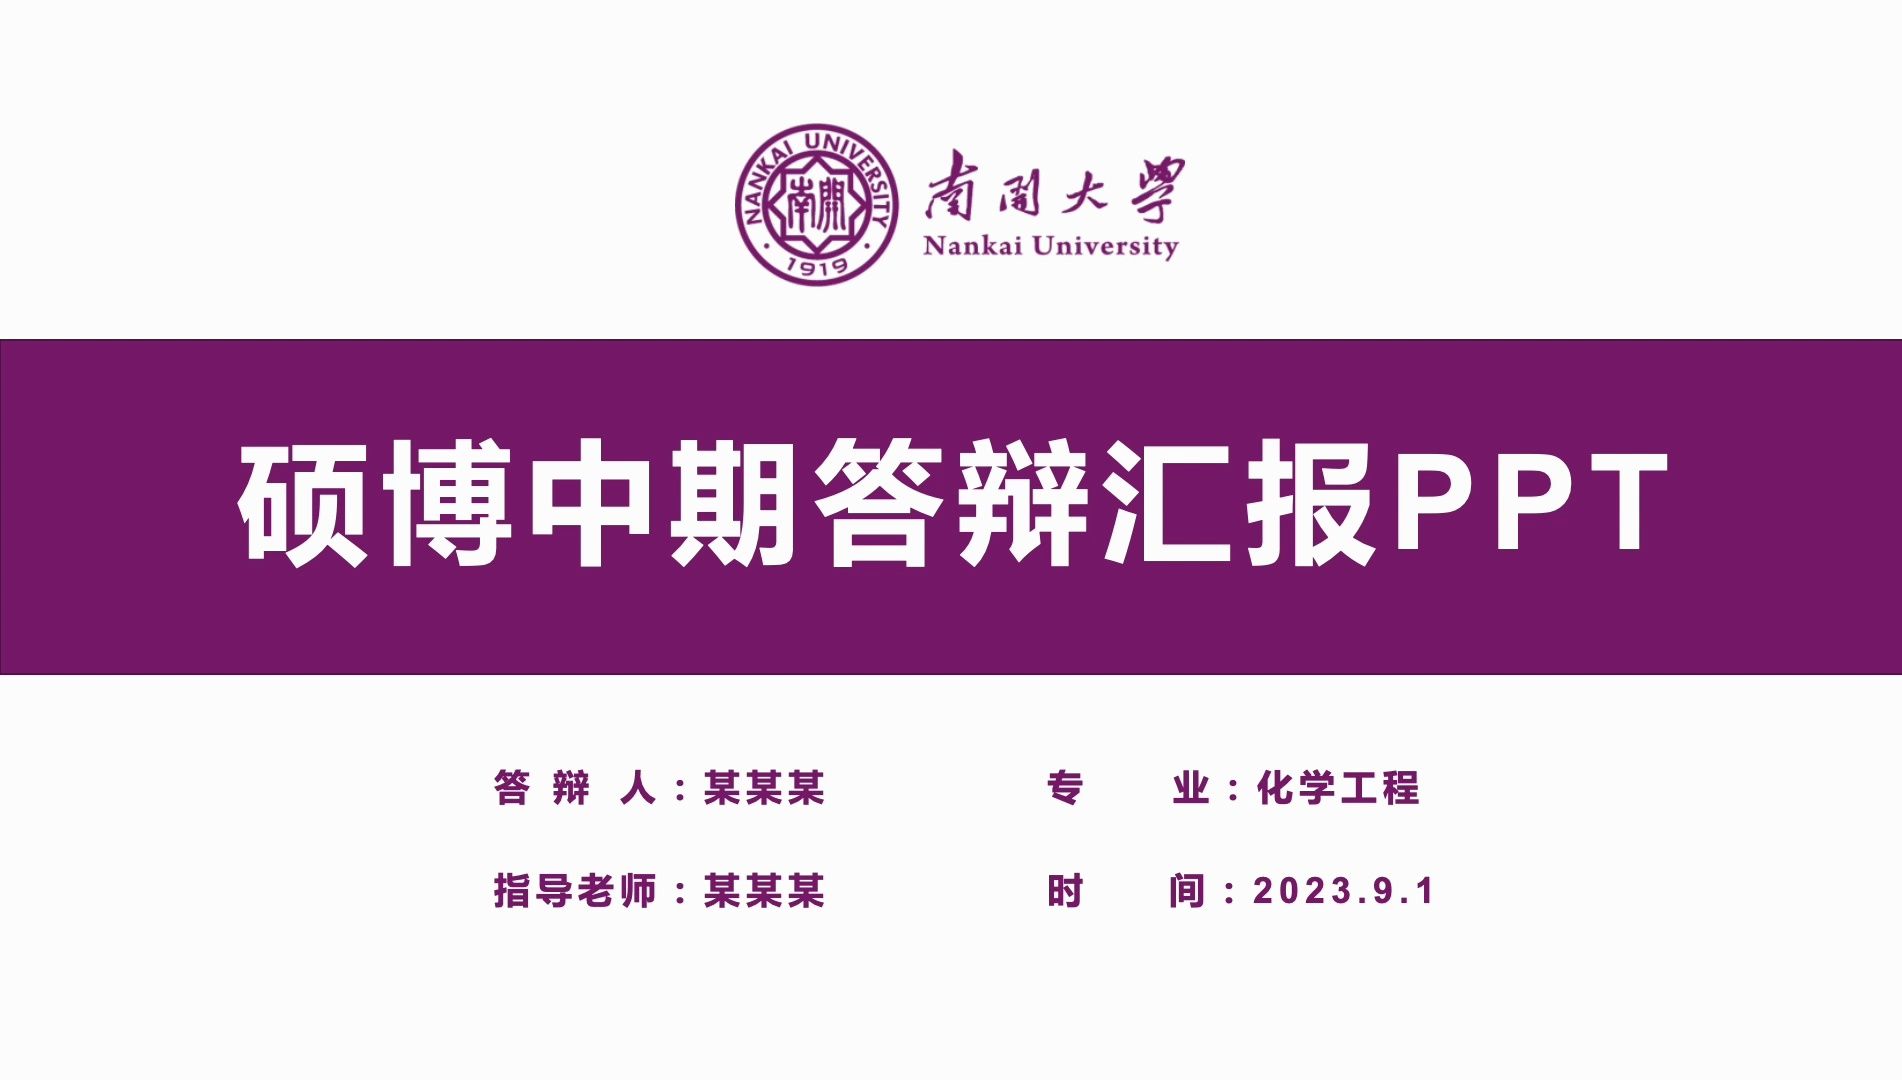 紫色南开大学博士硕士研究生毕业论文中期答辩ppt模板-可改校徽和配色